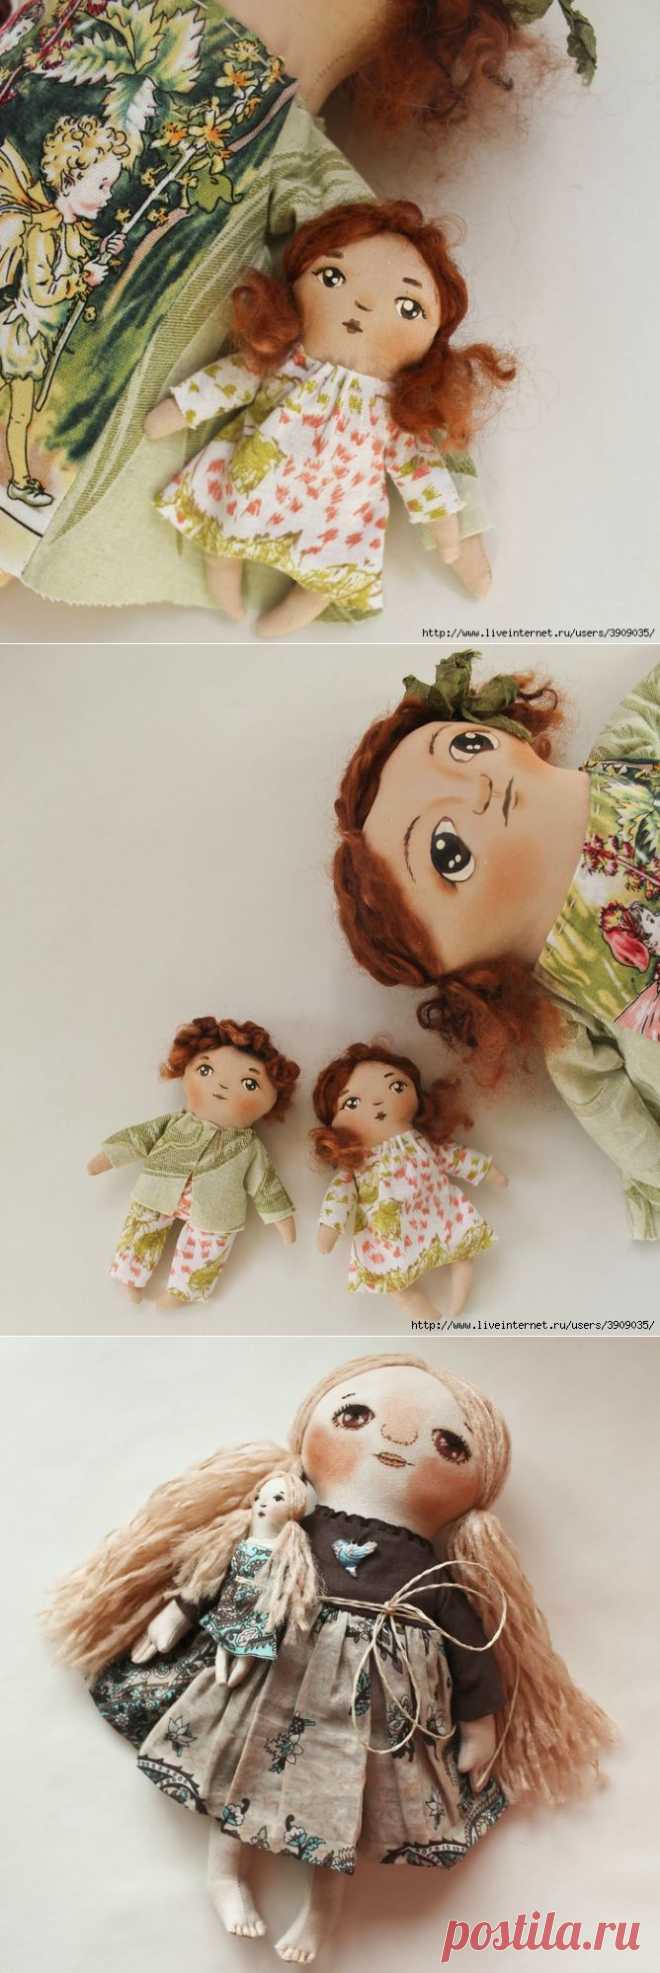 Куклы с малявками (примитивные милашки)